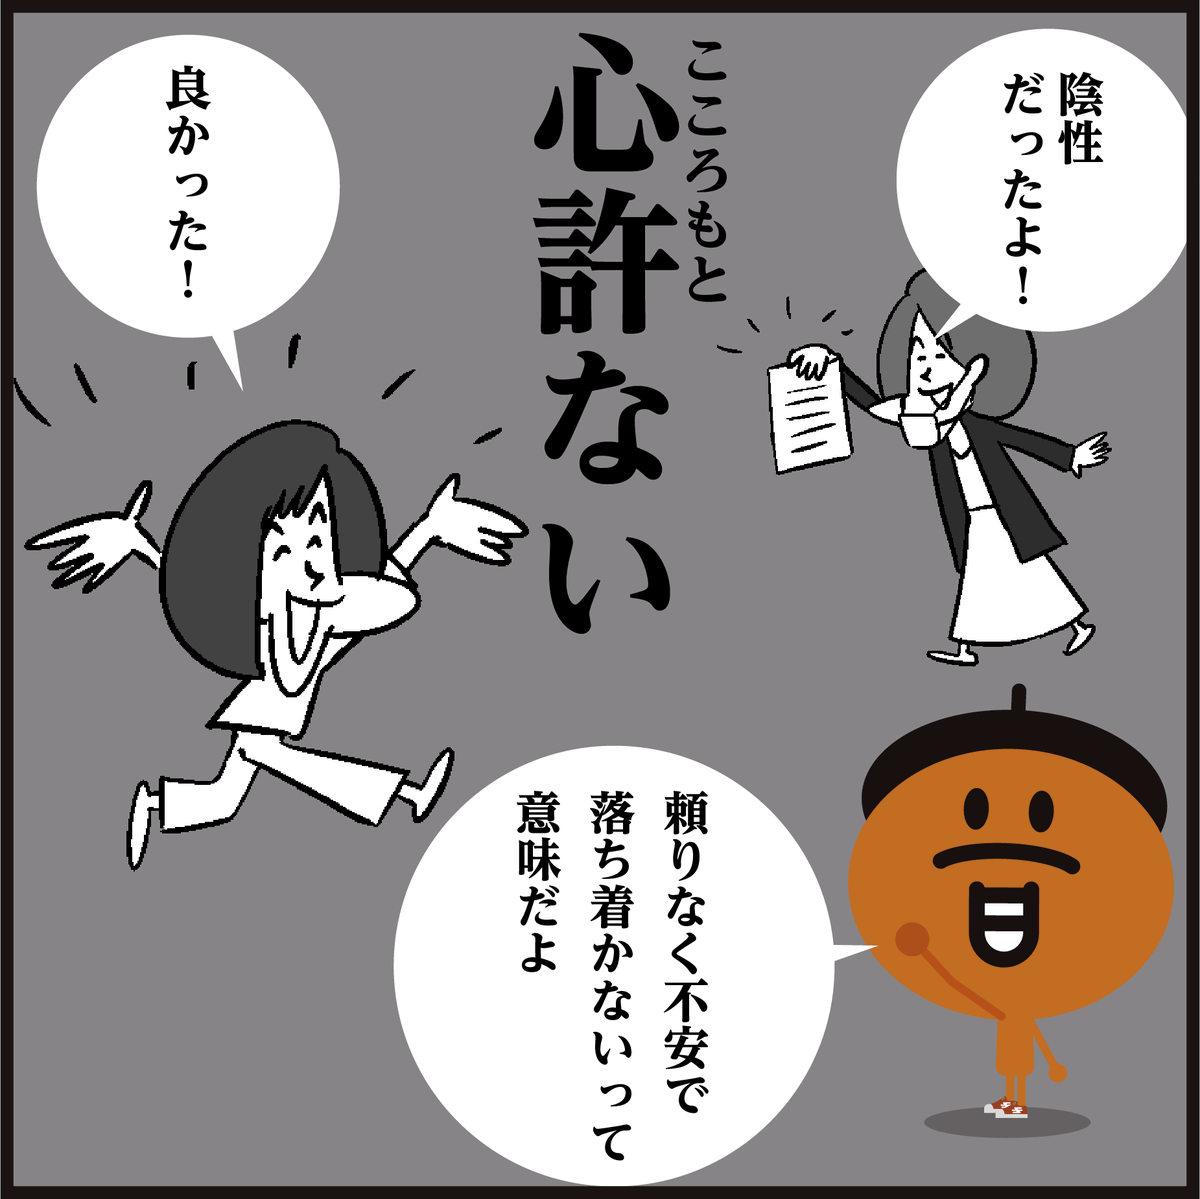 「心許ない」読めましたか?
言葉の語源は、古文でよく見る「心もとなし」(古語)です。
#漢字 #イラスト #4コマ漫画 